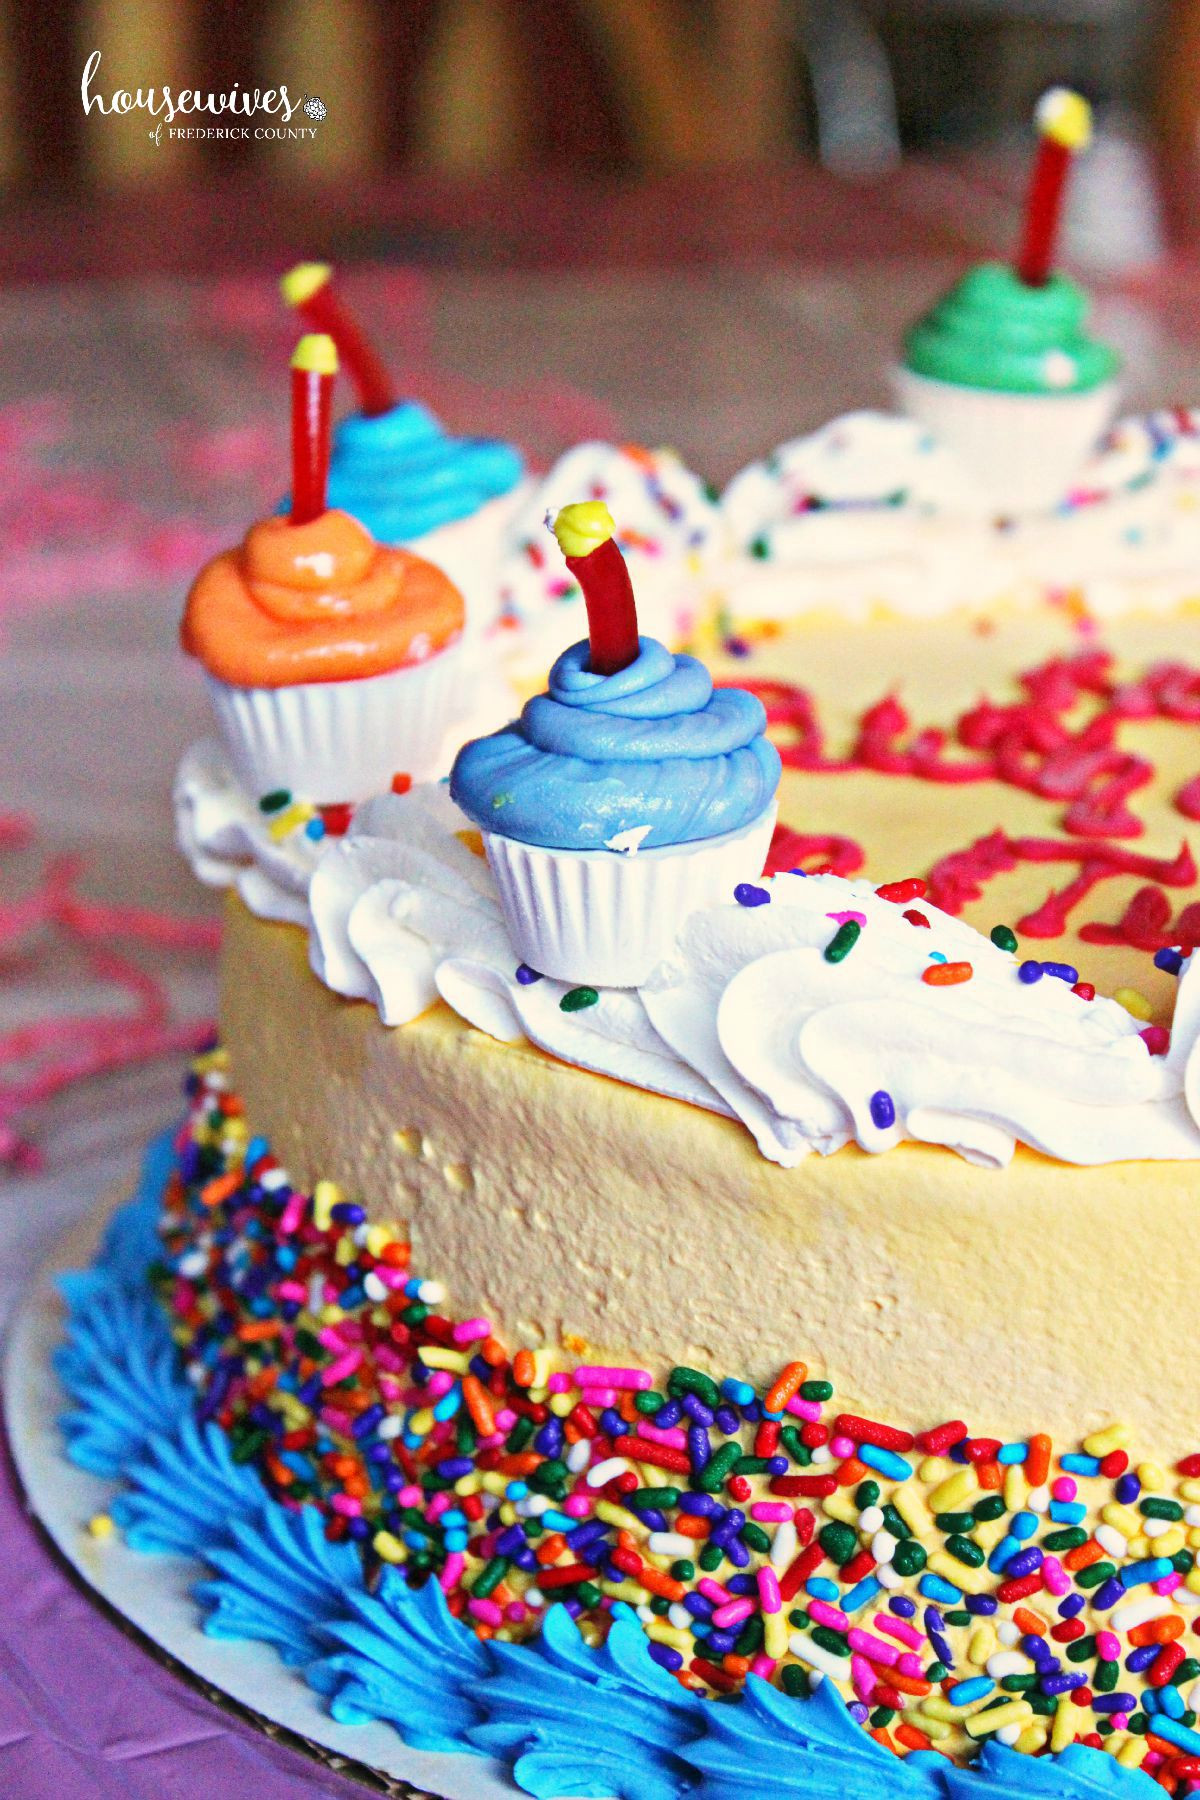 Baskin Robbins Birthday Cake
 Baskin Robbins Ice Cream Cake The Magic of Memories